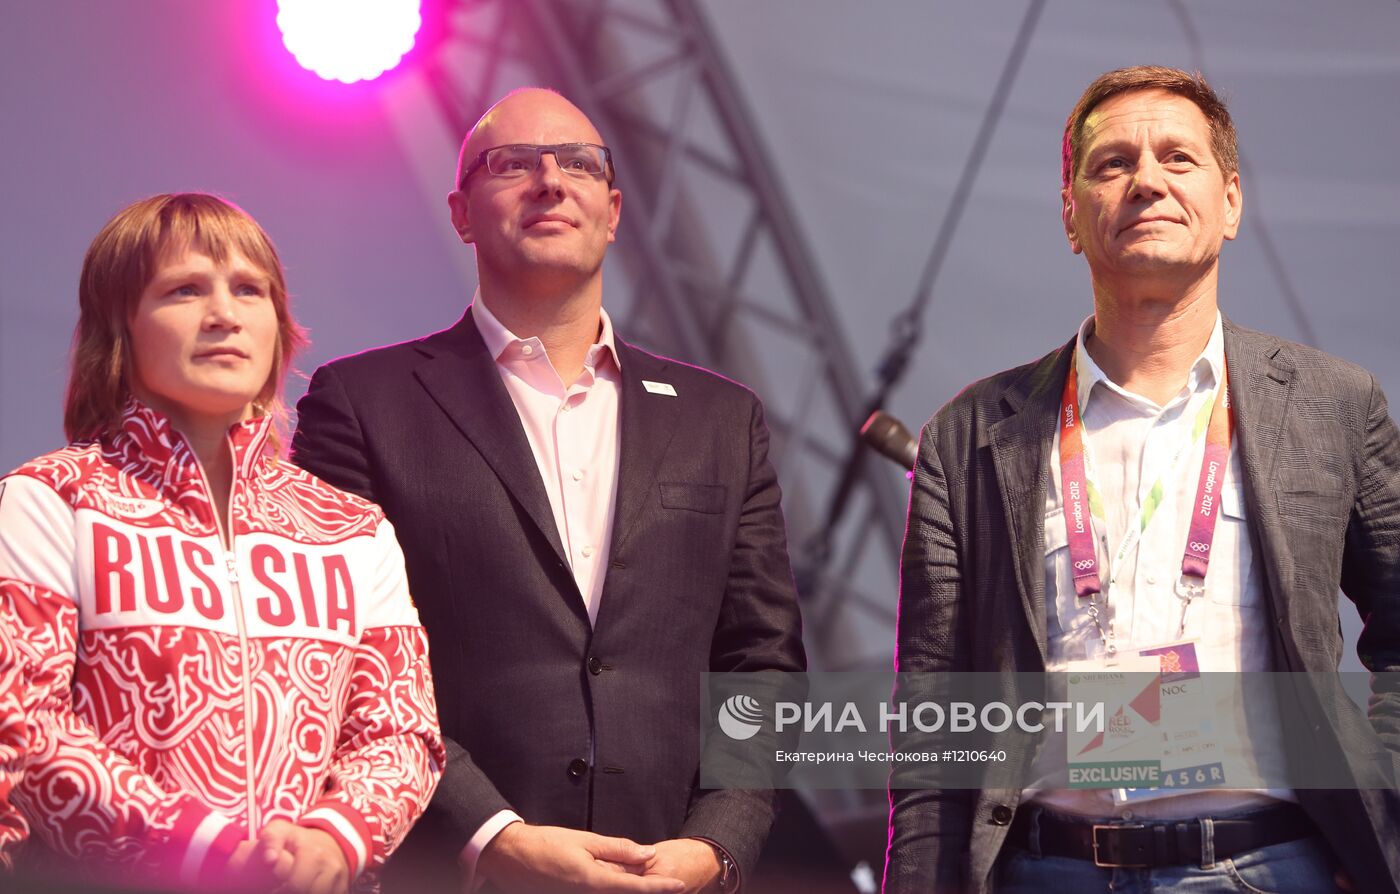 Чествование олимпийских призеров в Russia Park в Лондоне